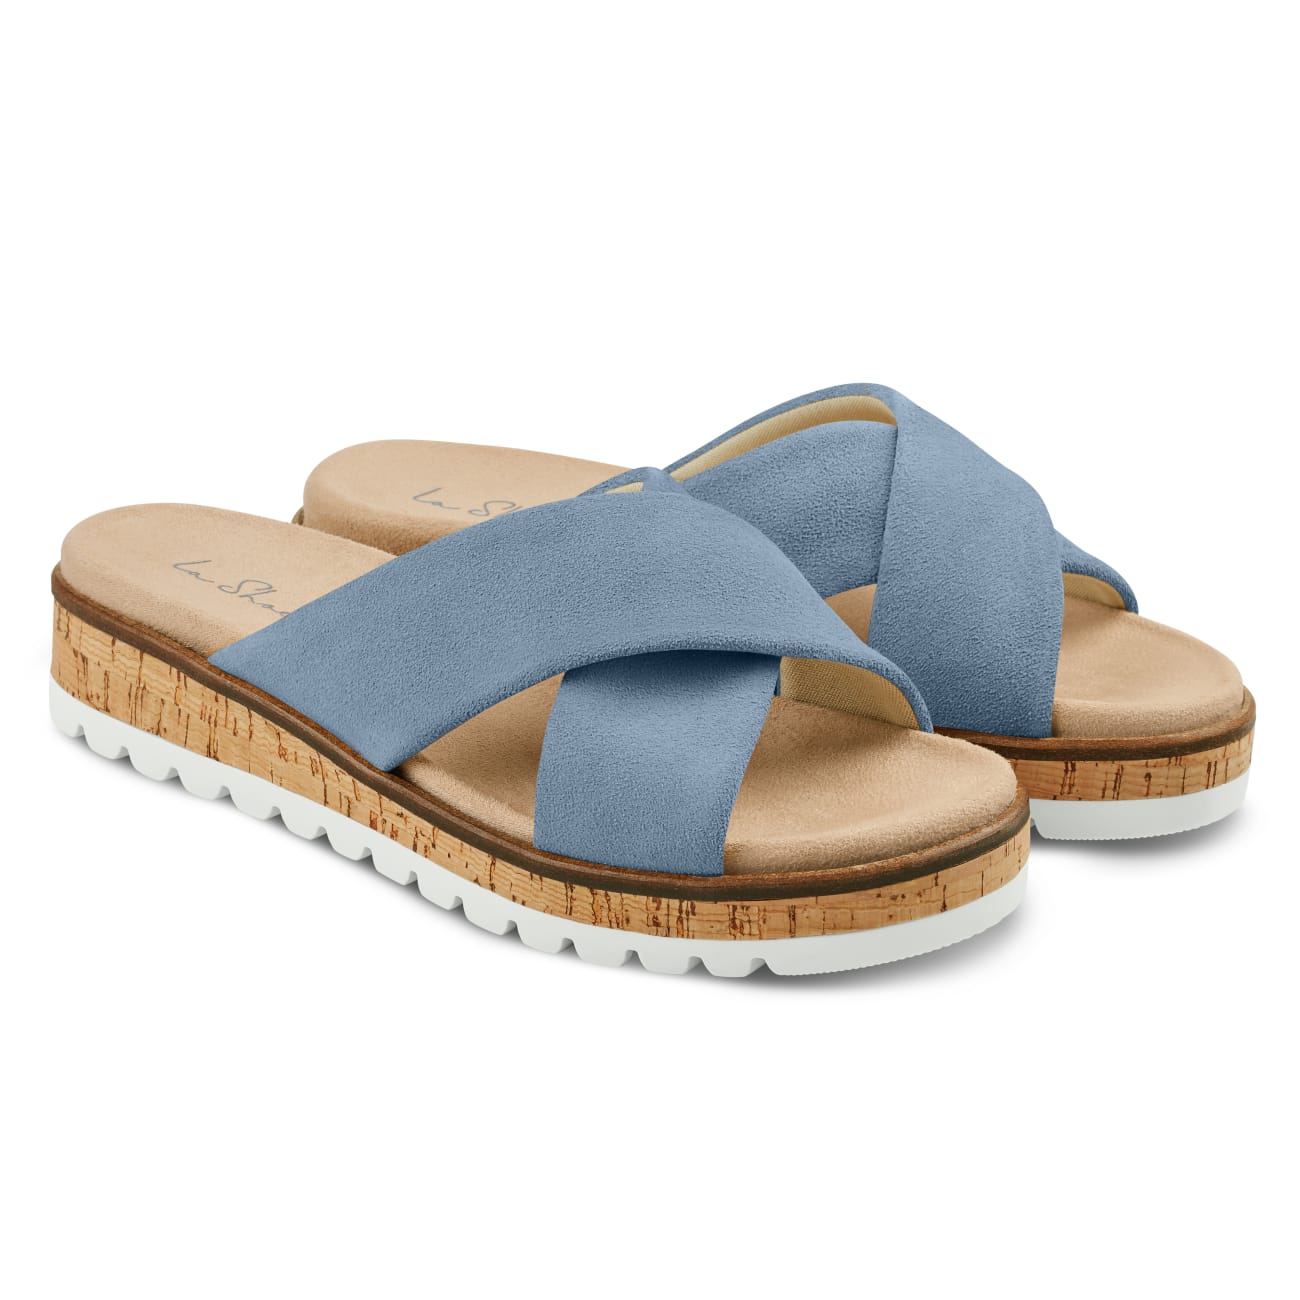 Pantolette mit Kreuzriemen Bleu – modischer und bequemer Schuh für Hallux valgus und empfindliche Füße von LaShoe.de